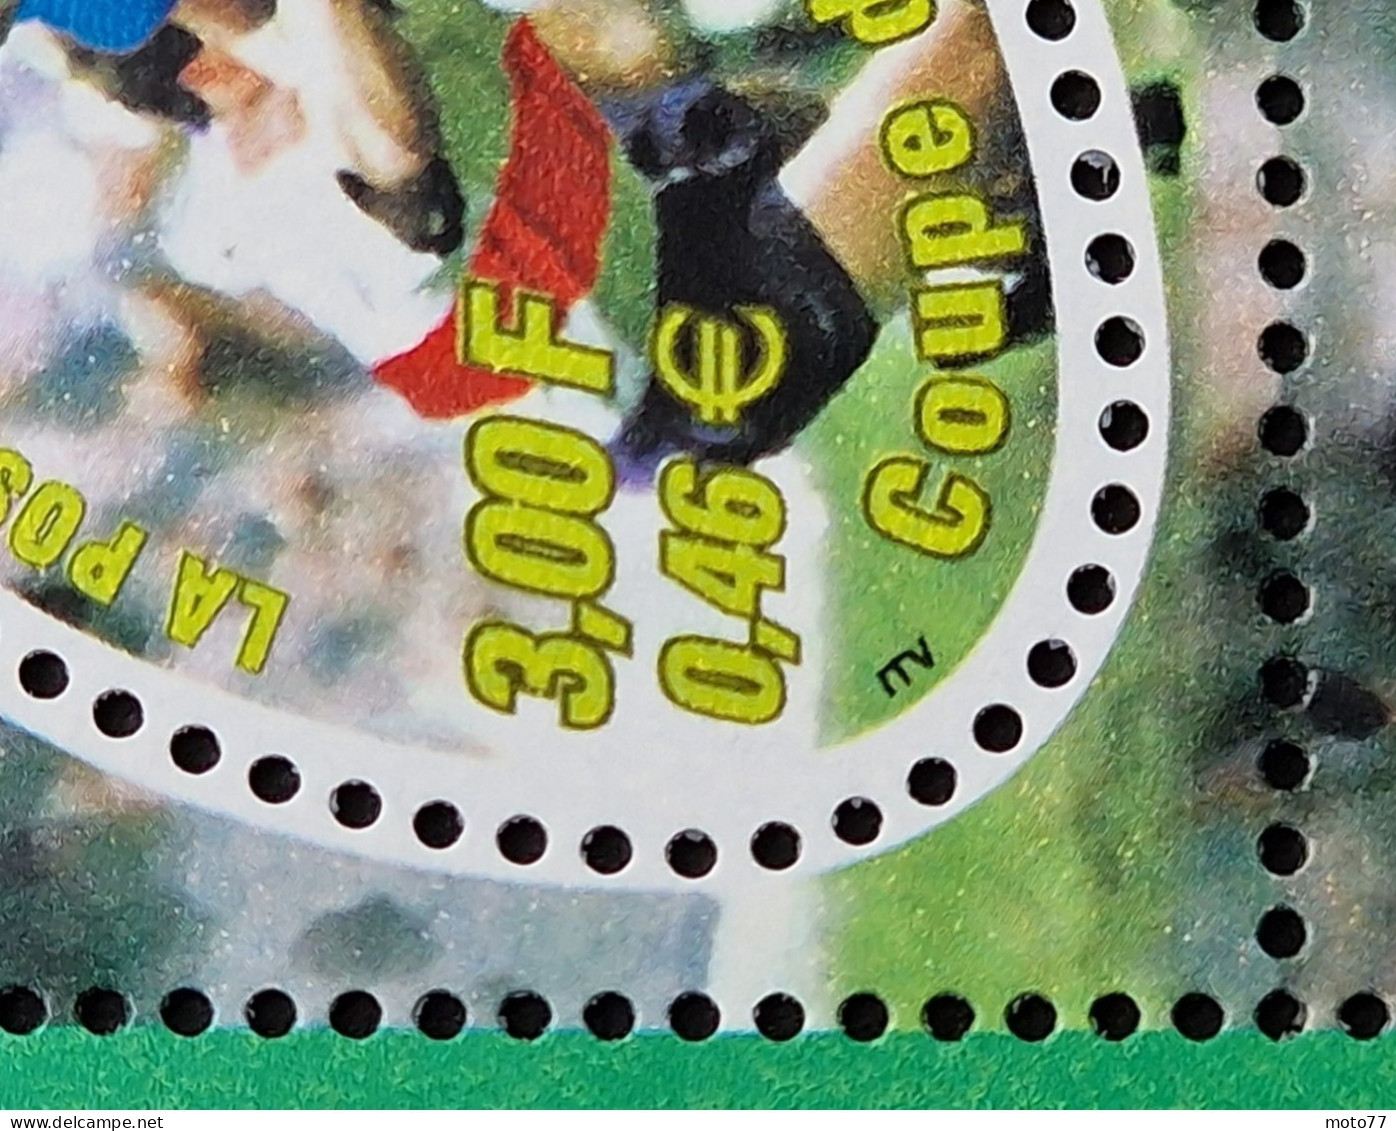 TIMBRE France BLOC FEUILLET 26 neuf - 1999 timbres 3280 dont 1 variété ITV - Yvert & Tellier 2003 coté 12 €